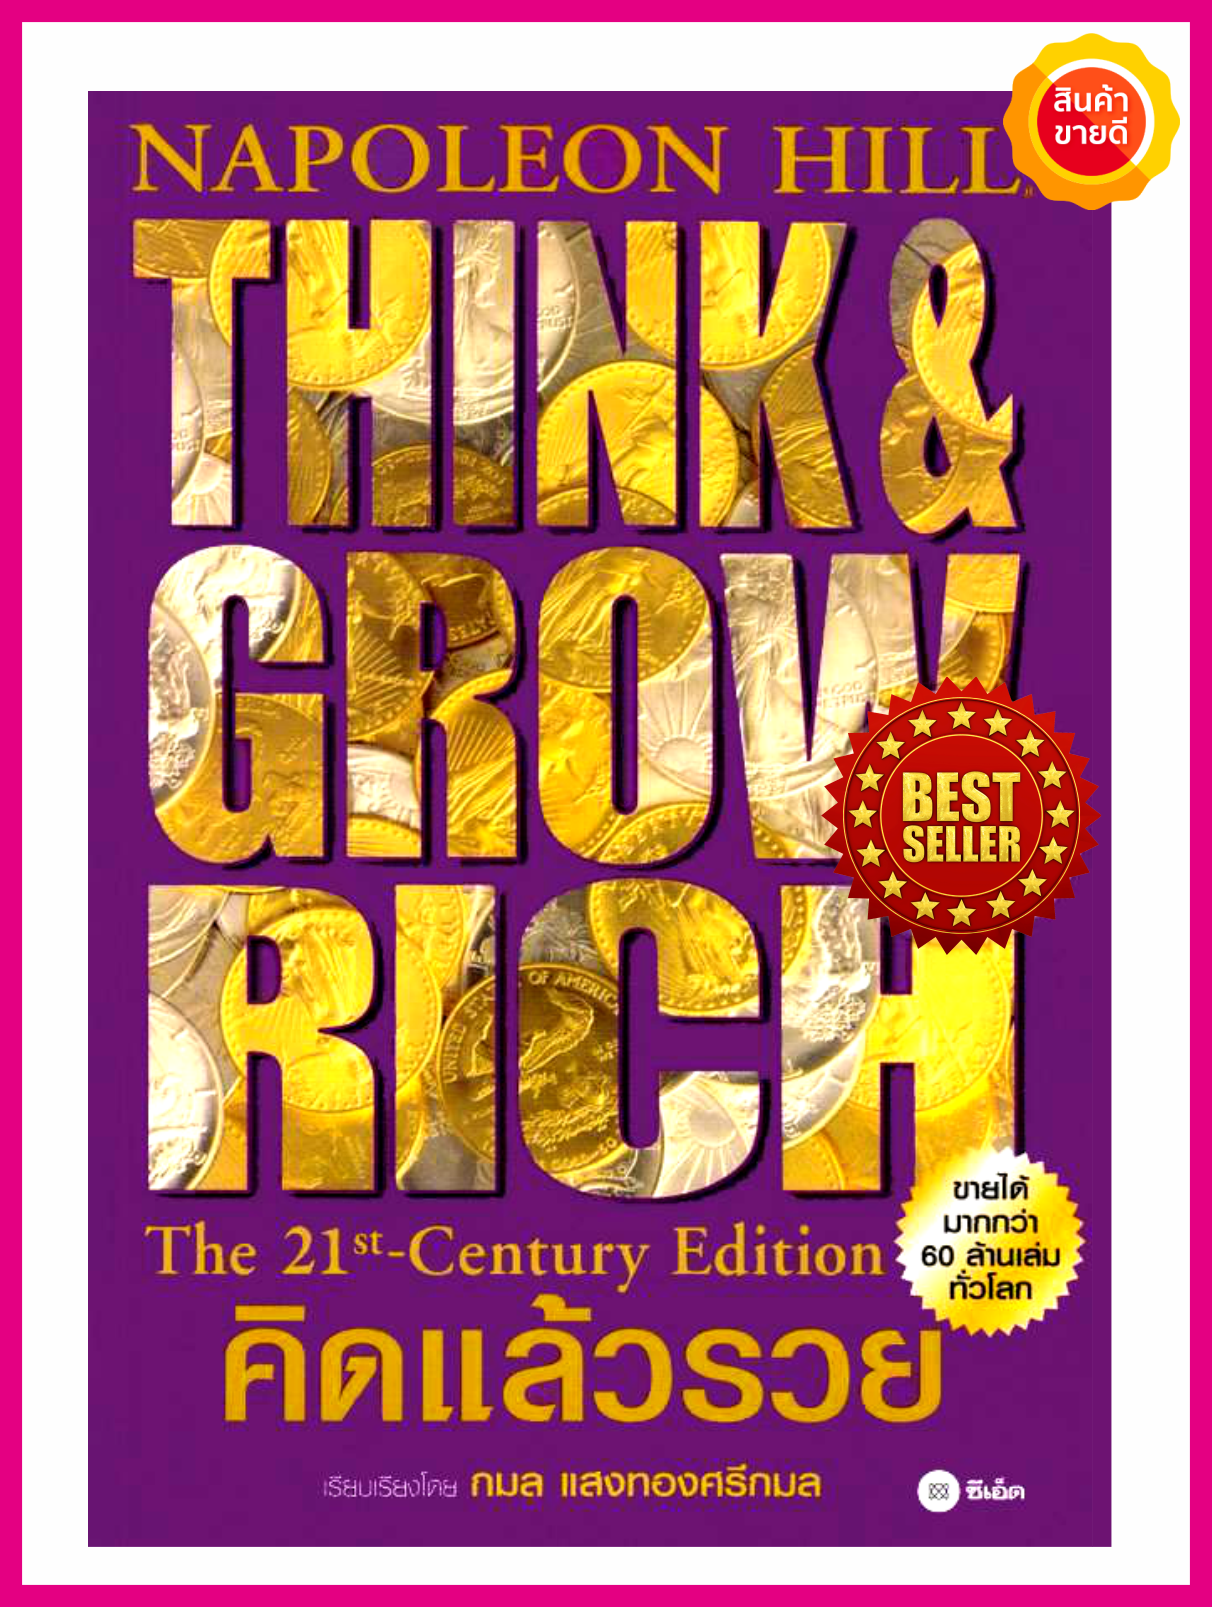 หนังสือ คิดแล้วรวย Think and Grow Rich โดย นโปเลียน ฮิลล์ คู่มือที่สร้างแรงจูงใจสู่ความสำเร็จและสร้างเศรษฐีมาแล้วมากมาย การพัฒนาตนเอง ธุรกิจ